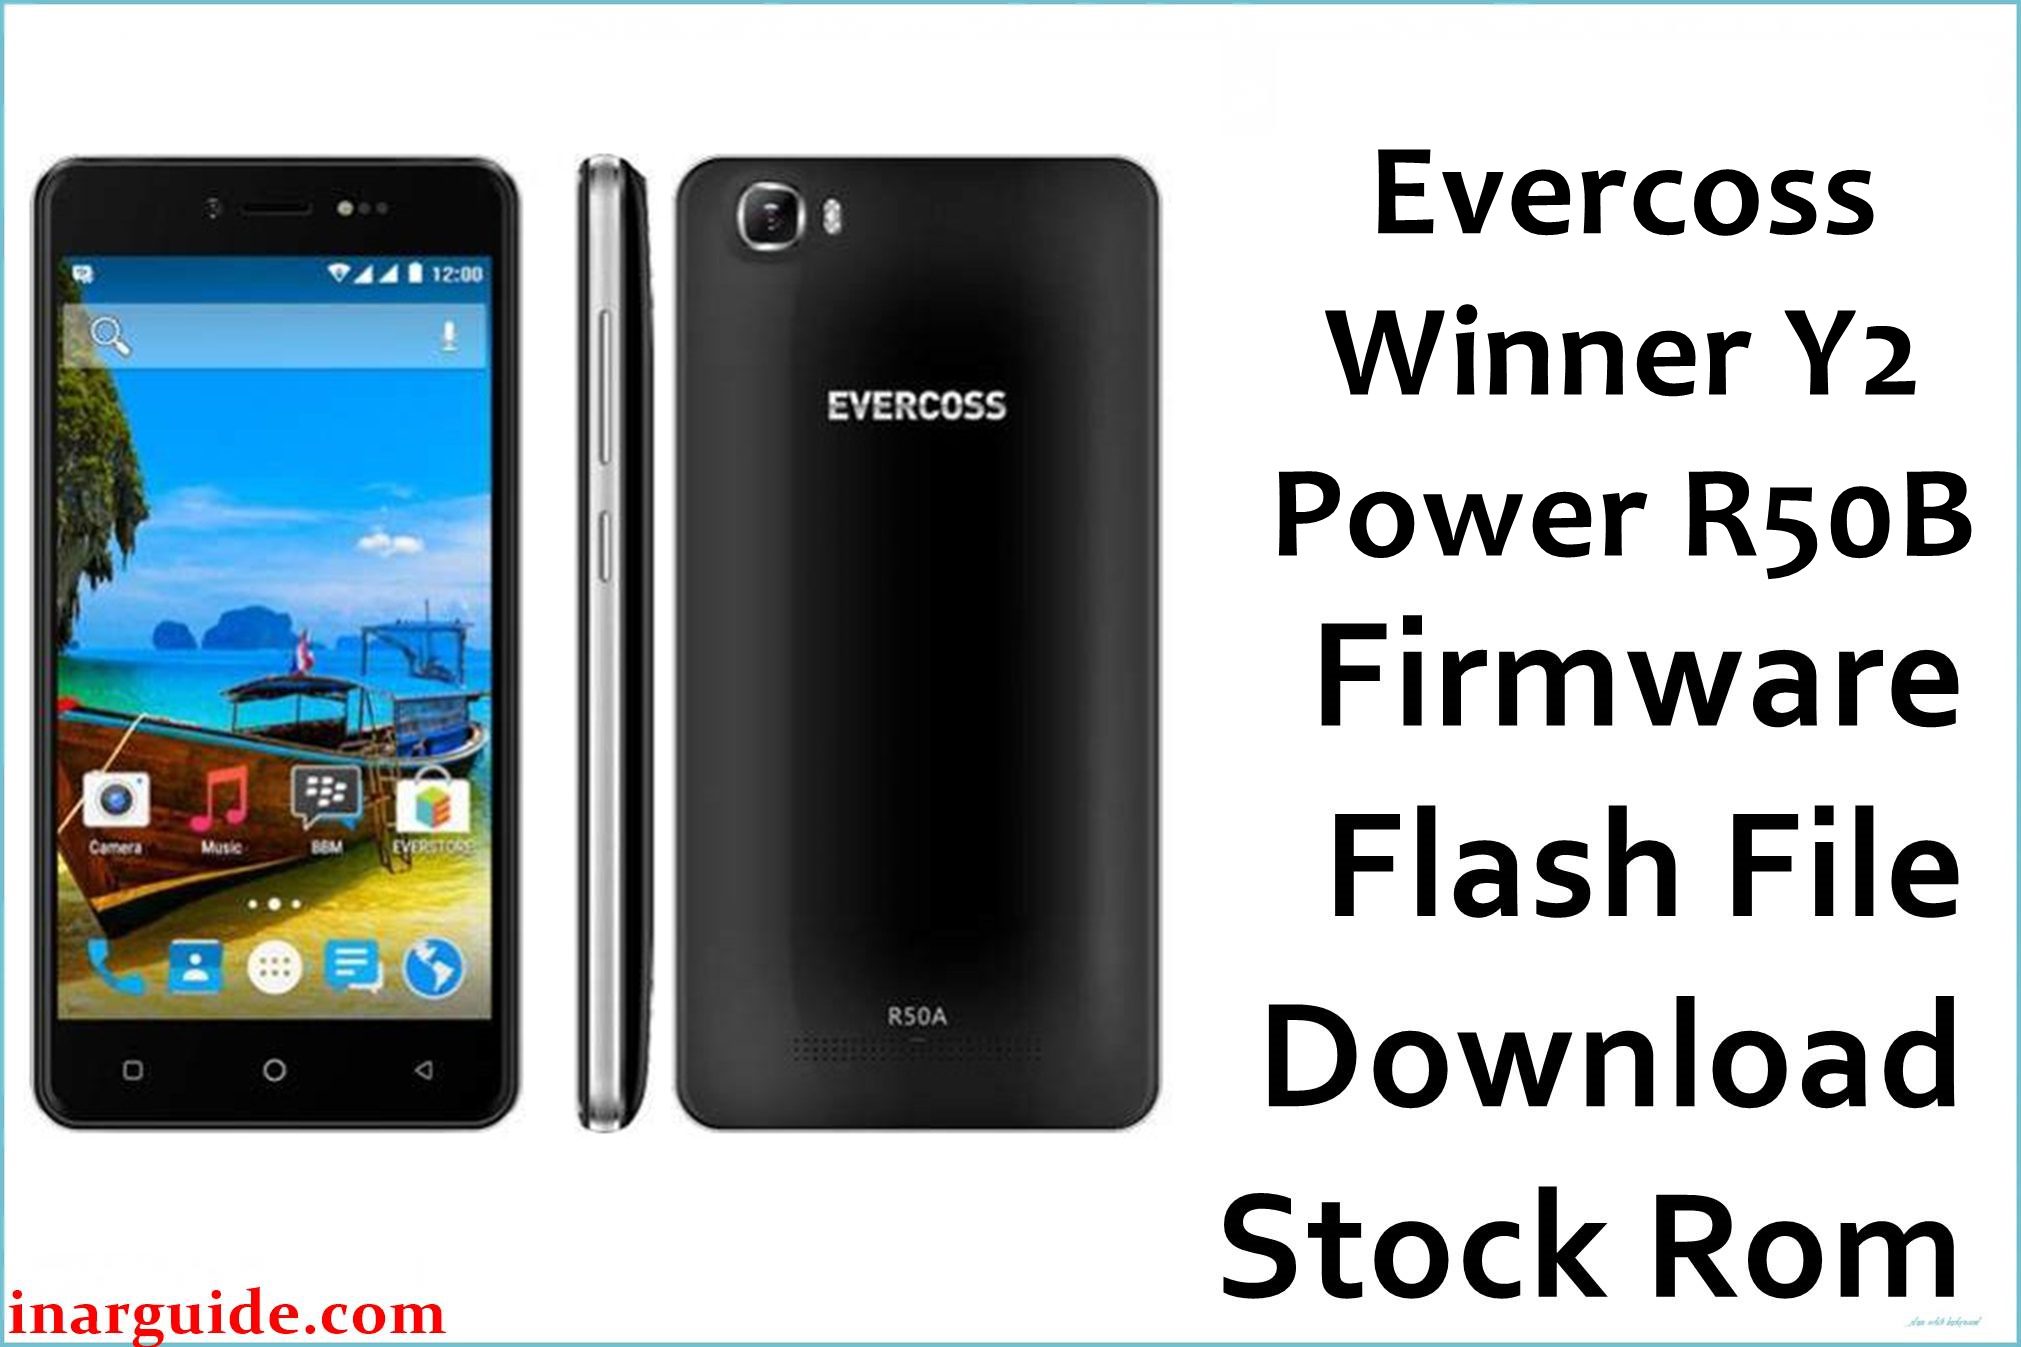 Evercoss Winner Y2 Power R50B